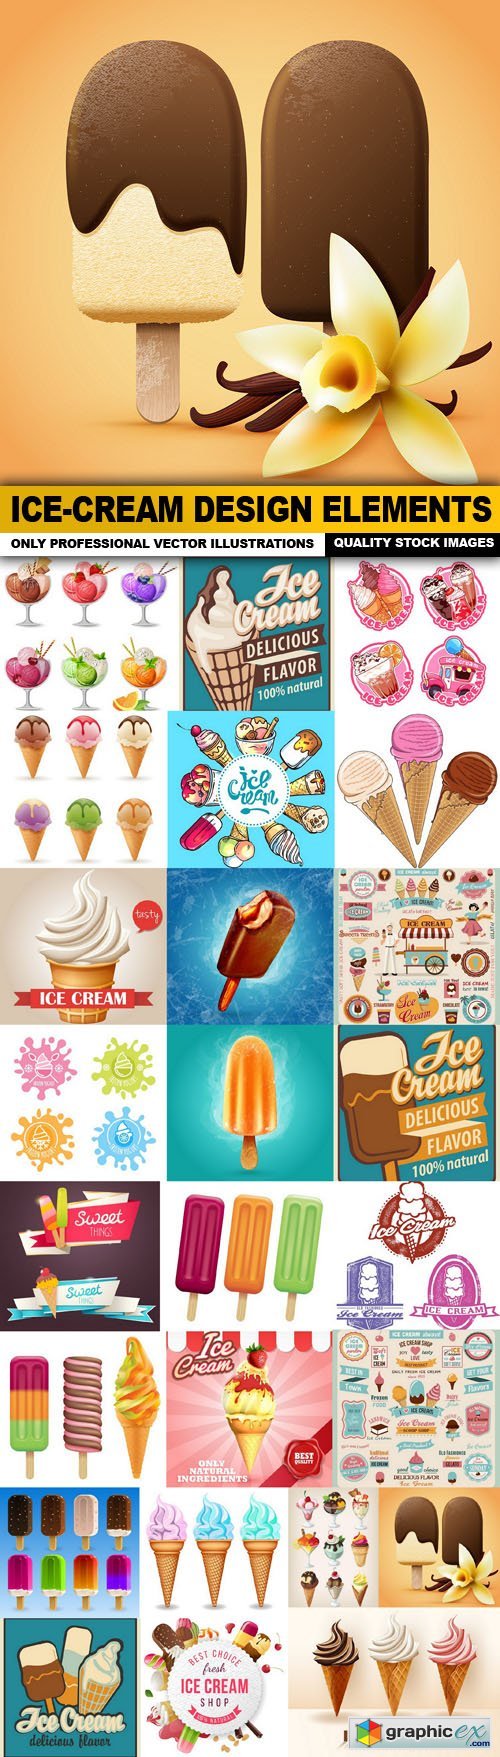 Ice-Cream Design Elements